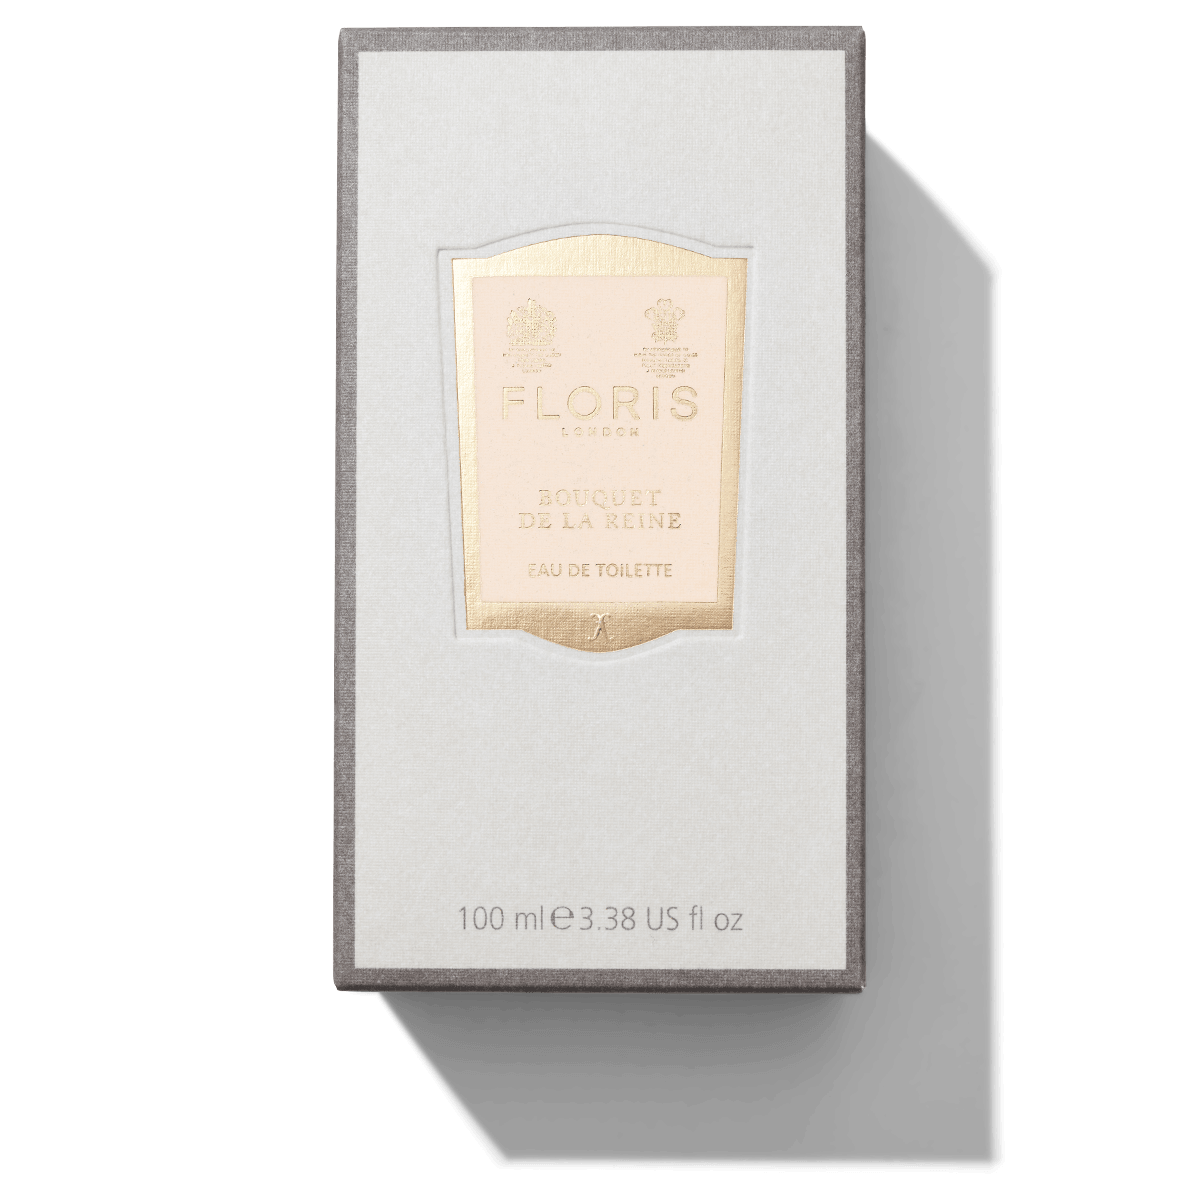 100ml White and Grey box with Golden Bouquet De La Reine label 